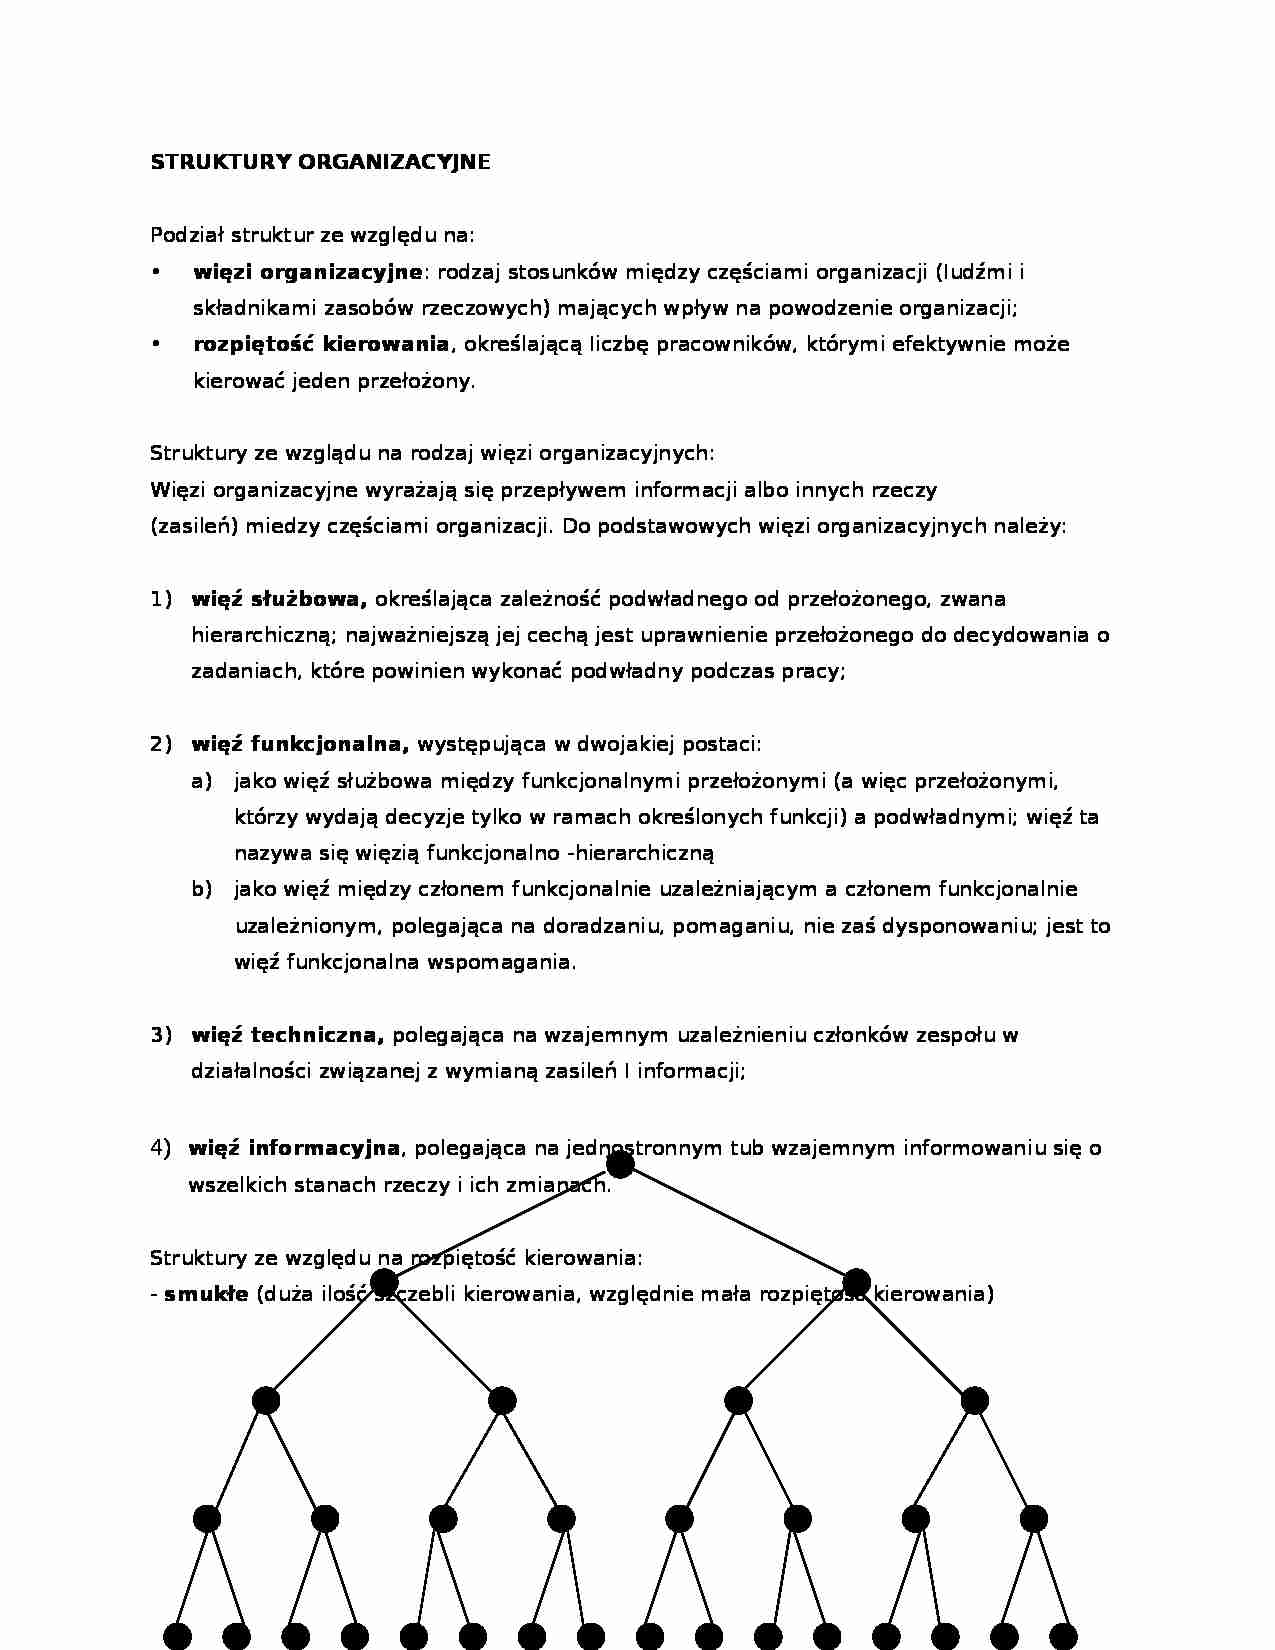 Zarządzanie - struktury organizacyjne - strona 1